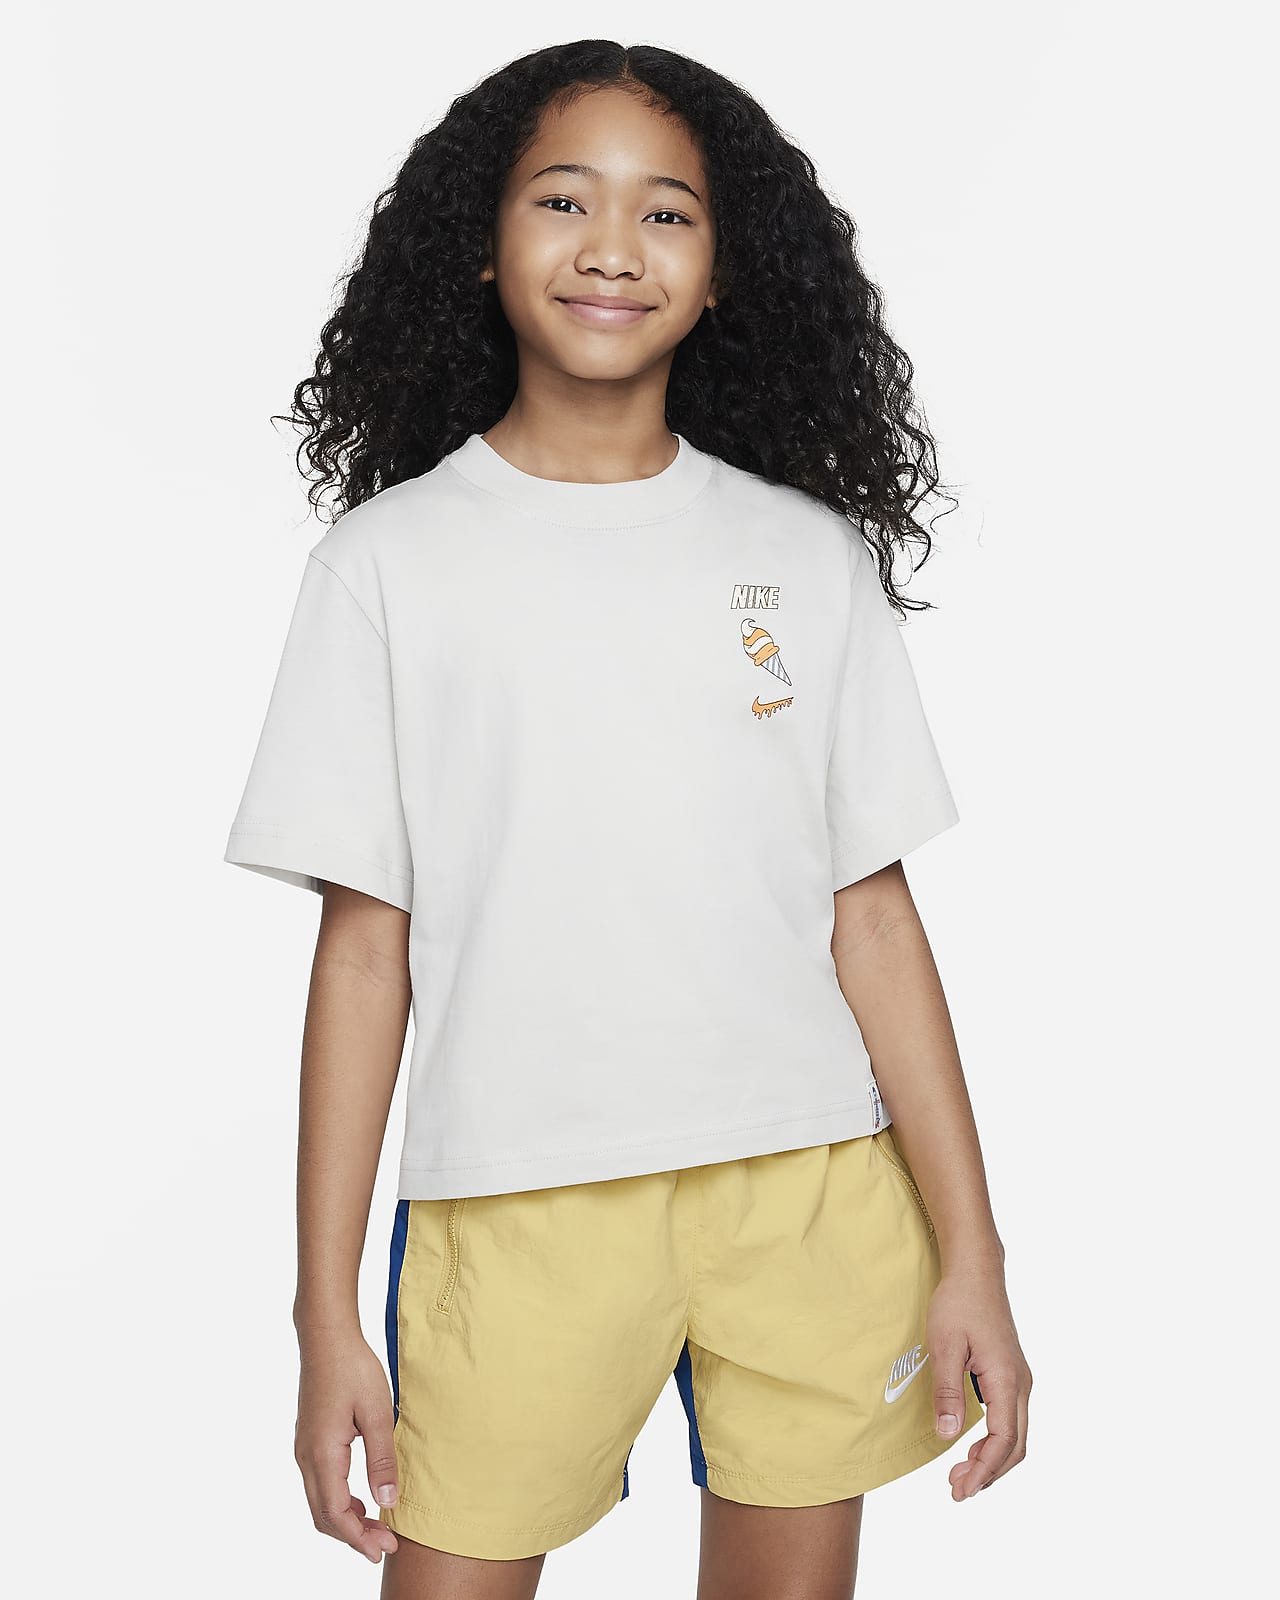 Nike Sportswear T-Shirt für ältere Kinder (Mädchen)